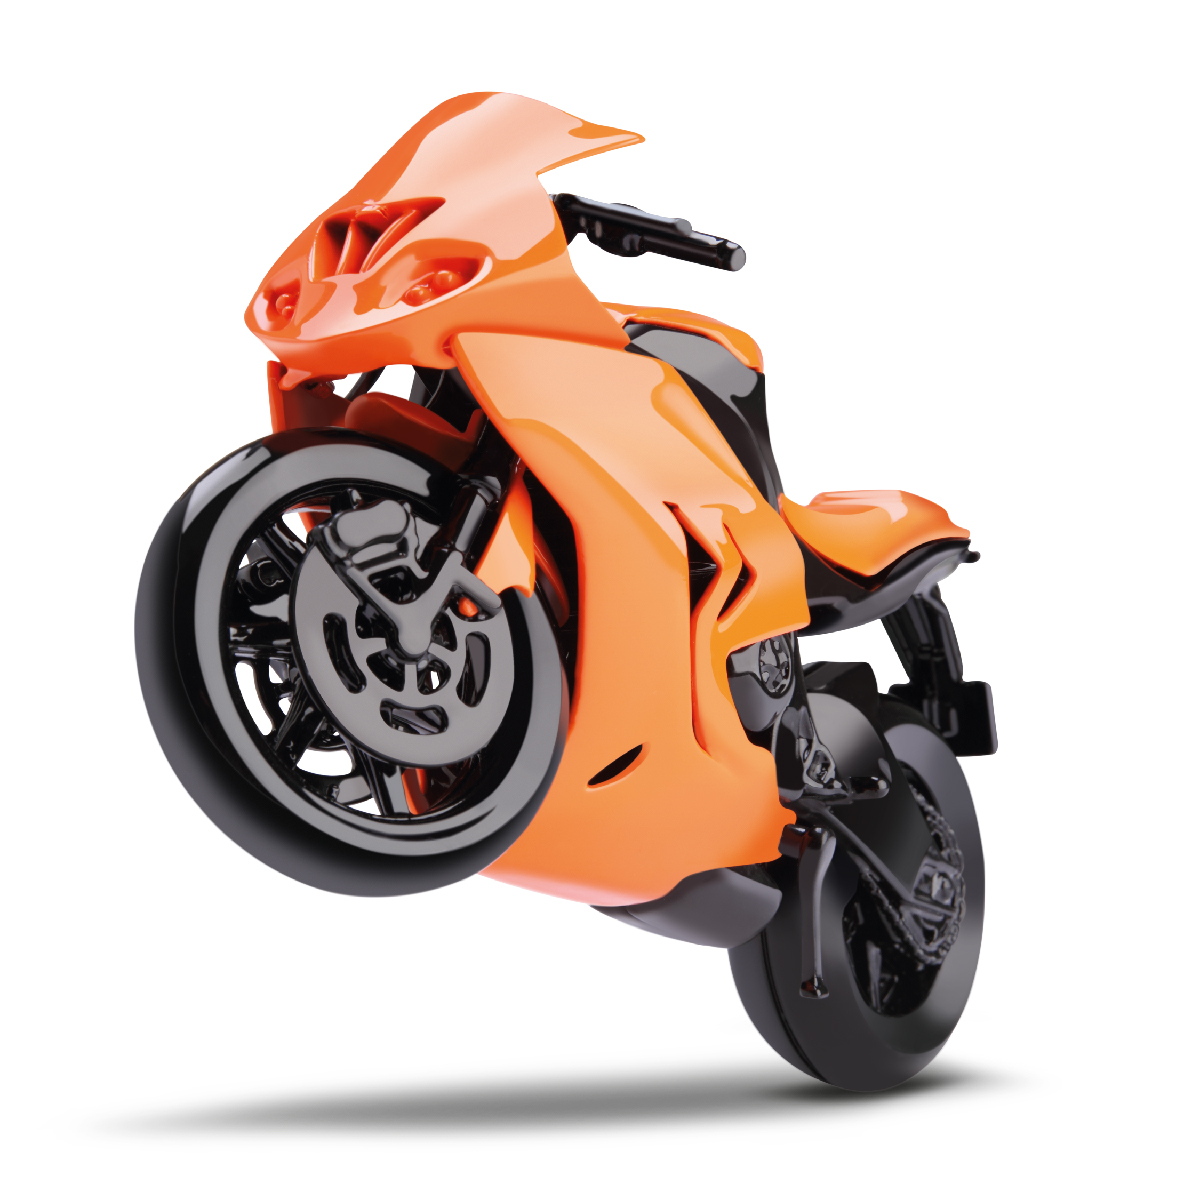 SB 1000 Motorcycle